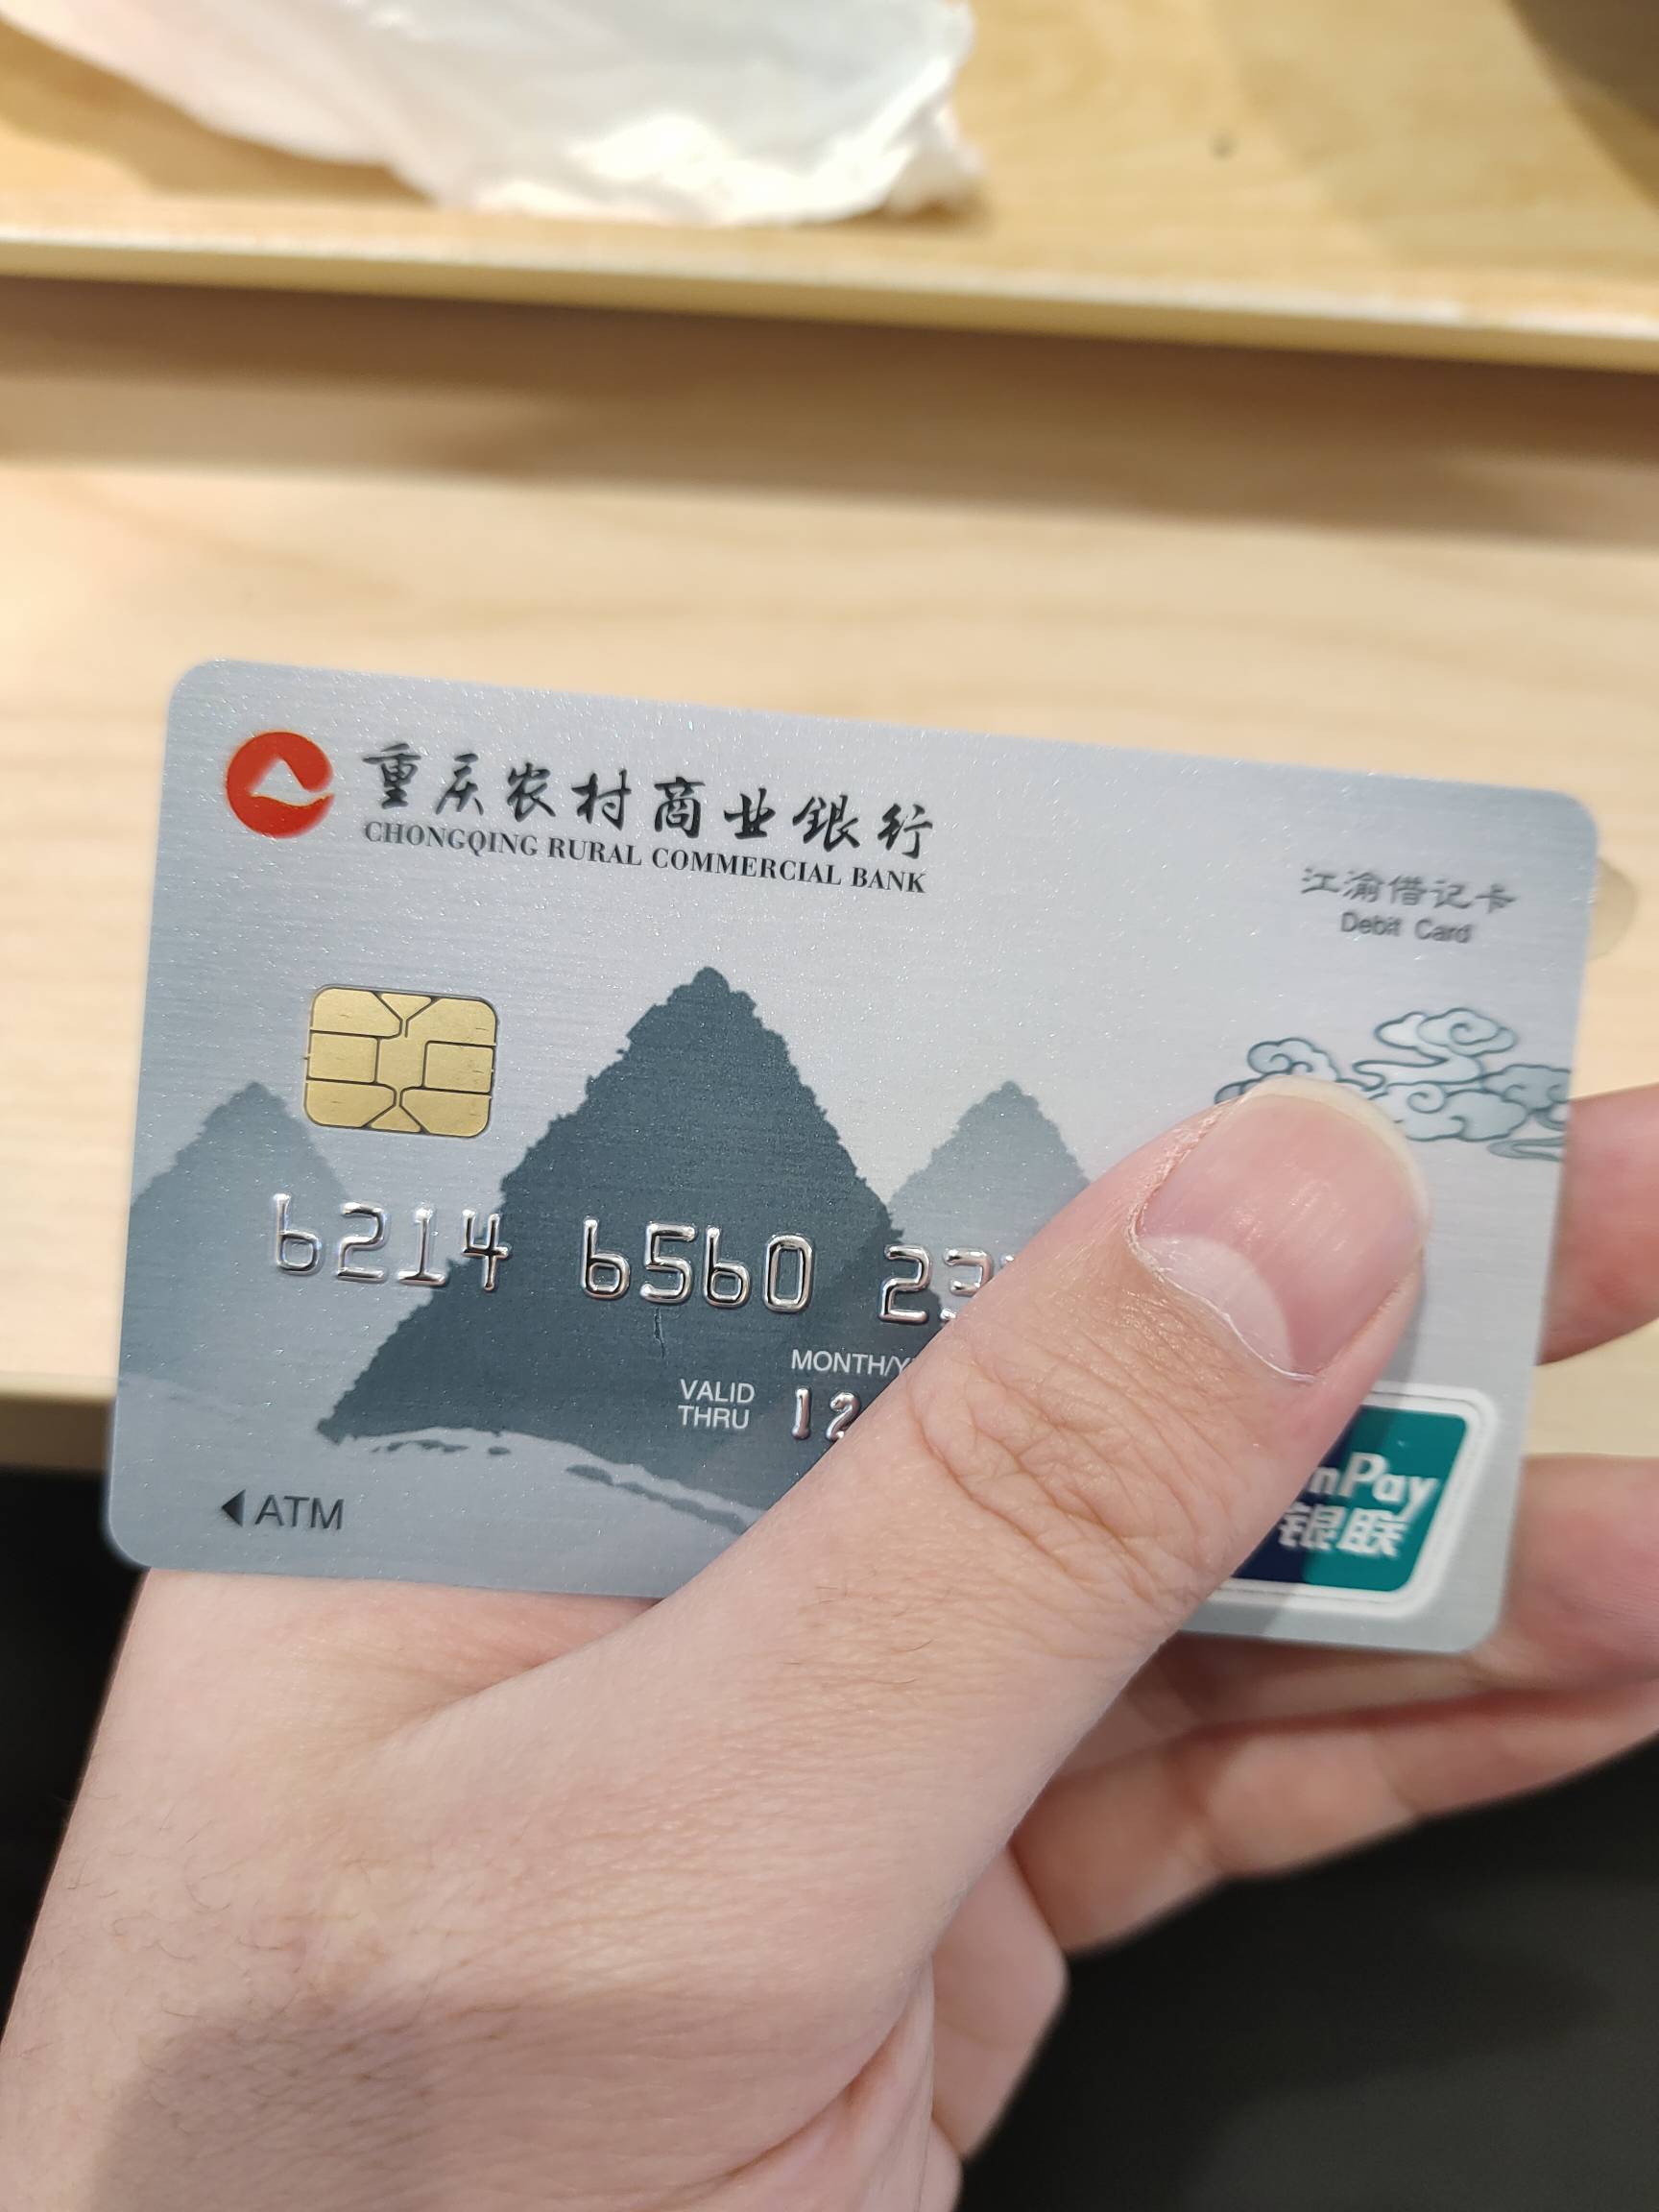 刚去重庆农商办了一类卡，有个支付宝微信提现返现活动，提5万可以返50，提4次就是200
1 / 作者:菲菲飞呀飞 / 